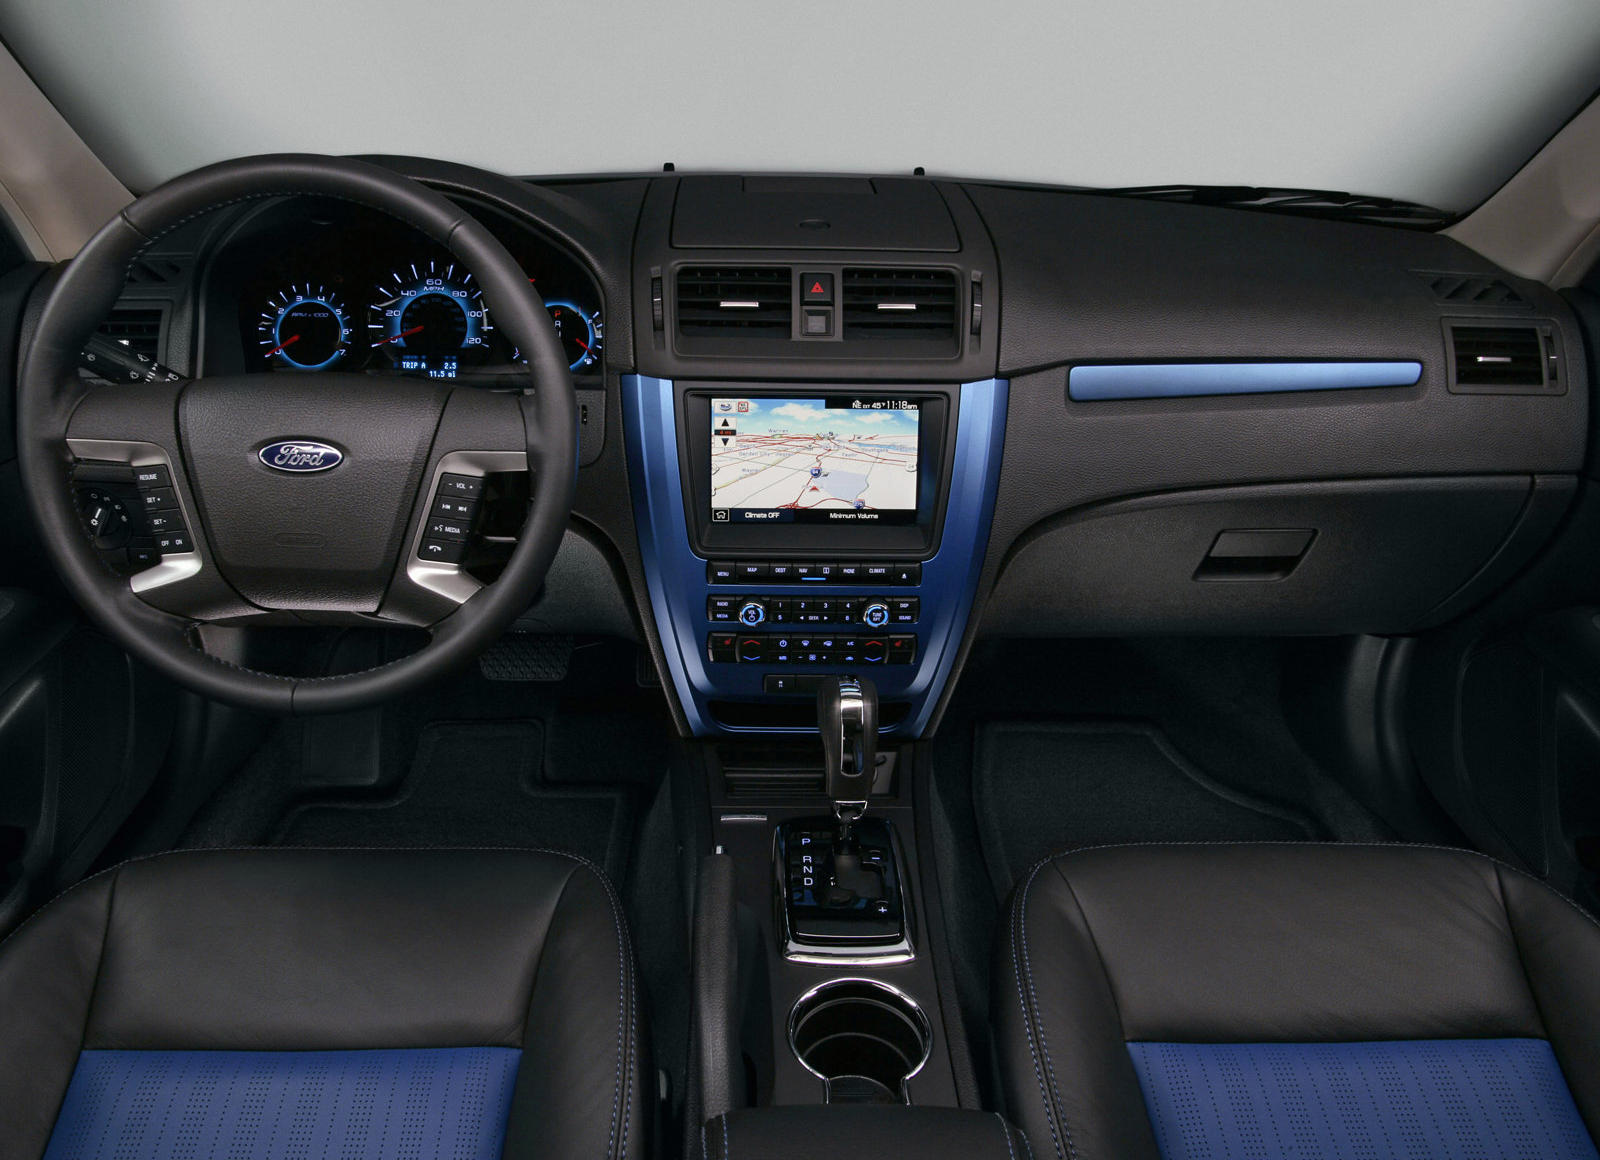 2012 Ford Fusion Interior Photos | CarBuzz